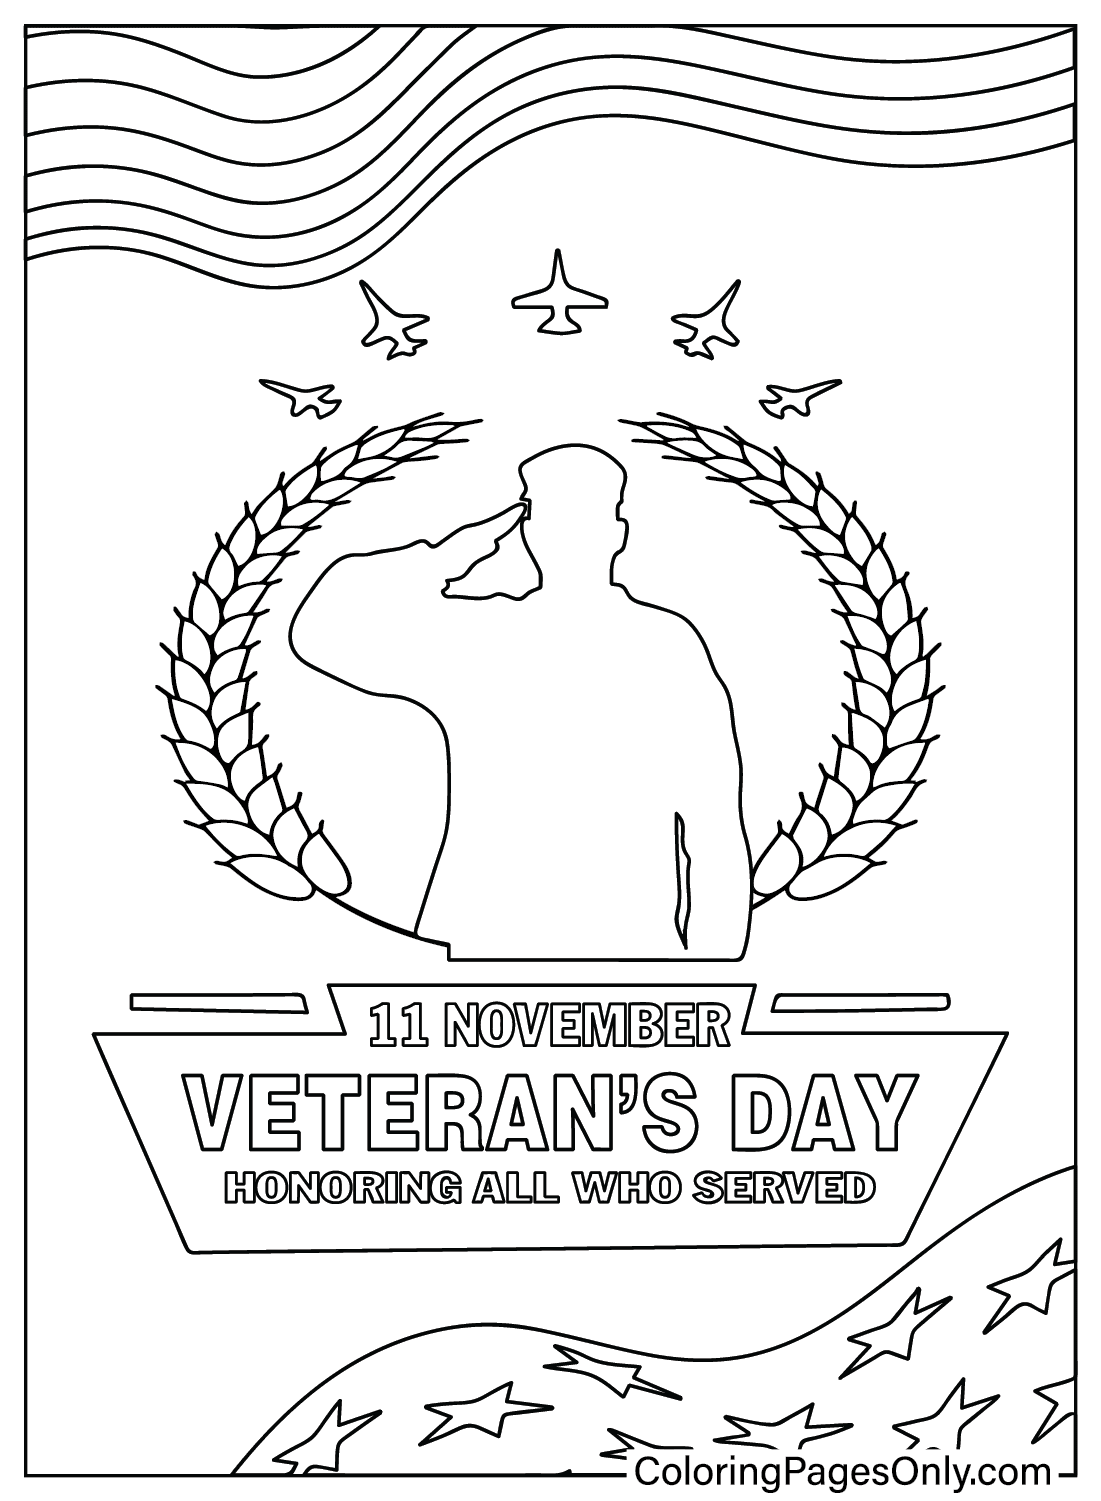 Hoja para colorear del Día de los Veteranos del Día de los Veteranos